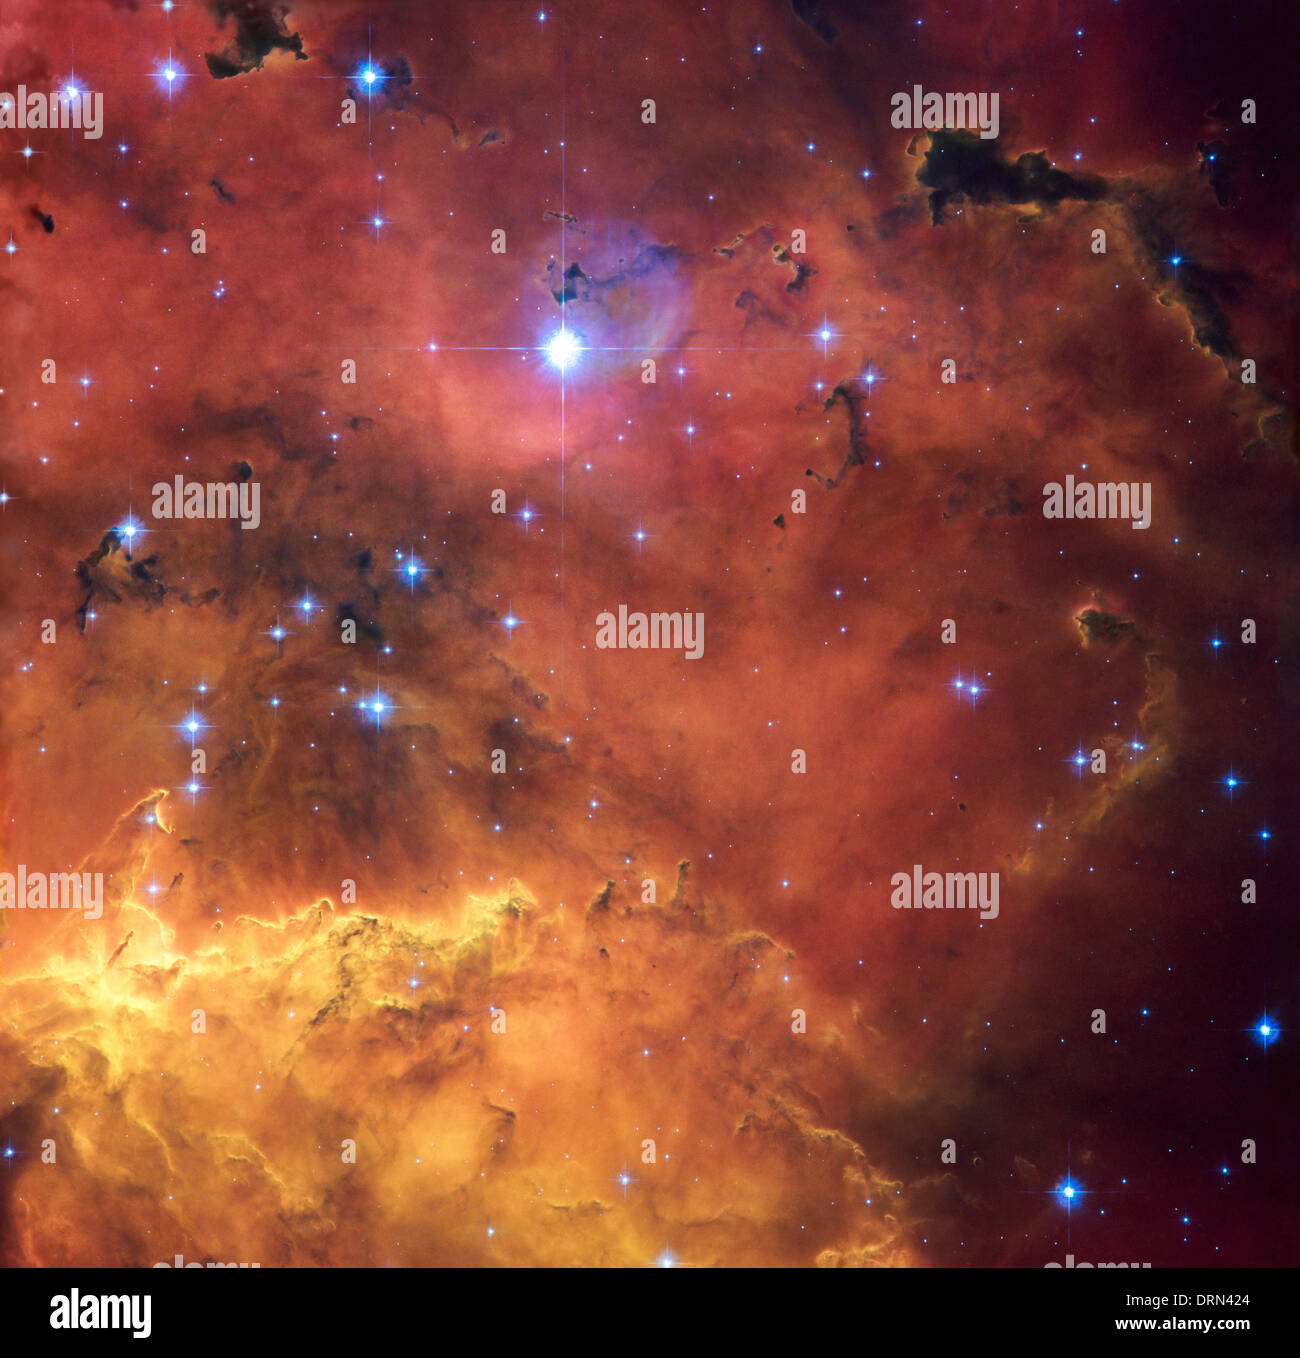 Une région d'étoiles en formation est en vedette dans cette superbe nouvelle NASA/ESA Hubble Space Telescope image de NGC 2467. Banque D'Images